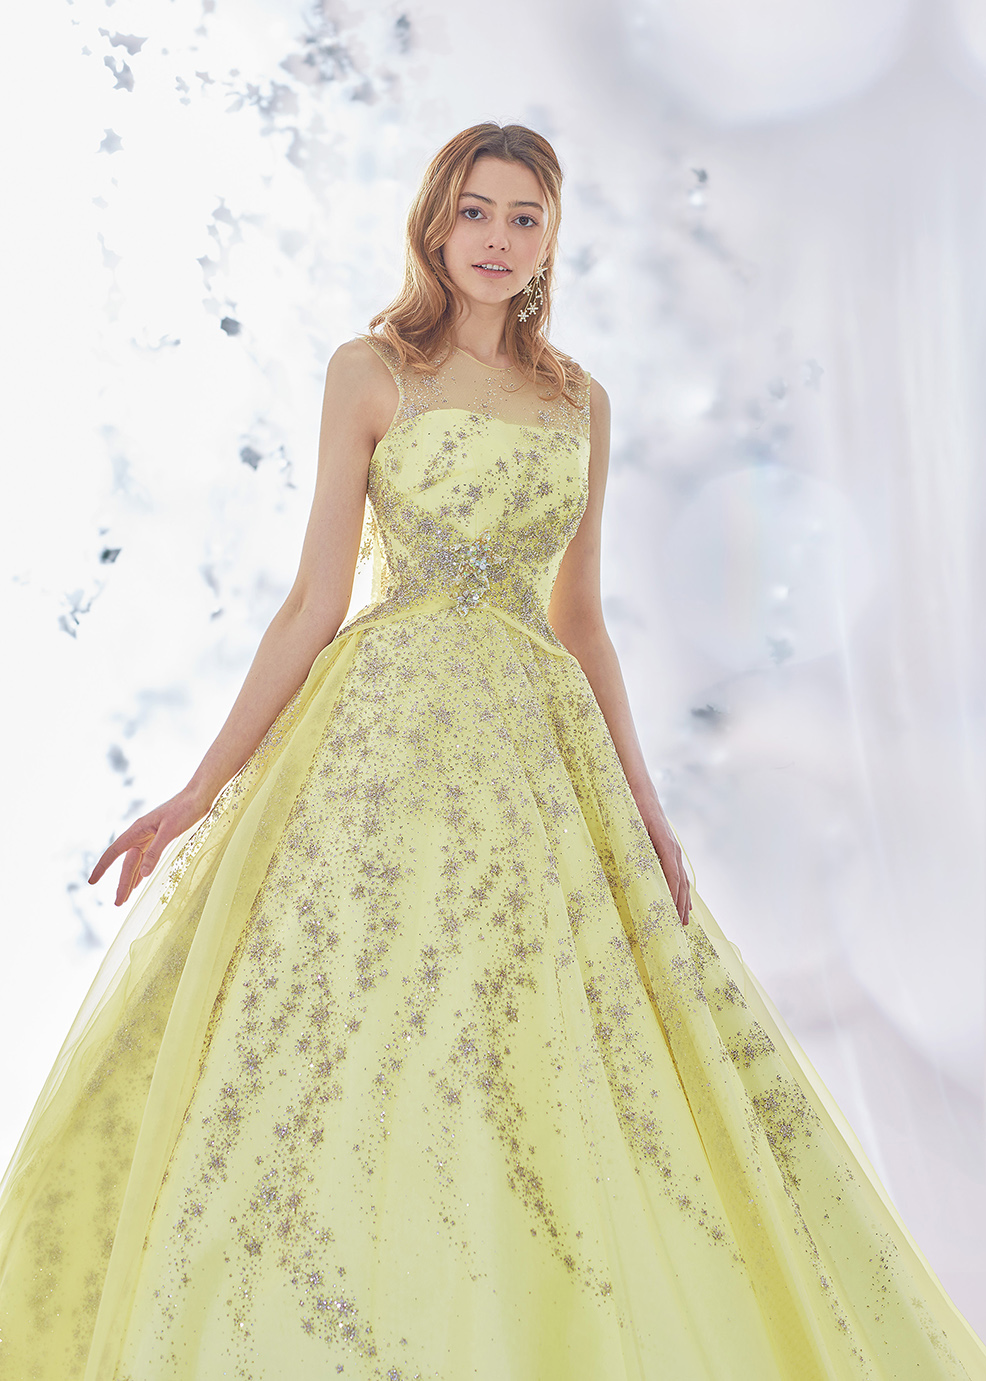 キラキラ輝くウェディングドレス・カラードレス【2021年トレンドワード 